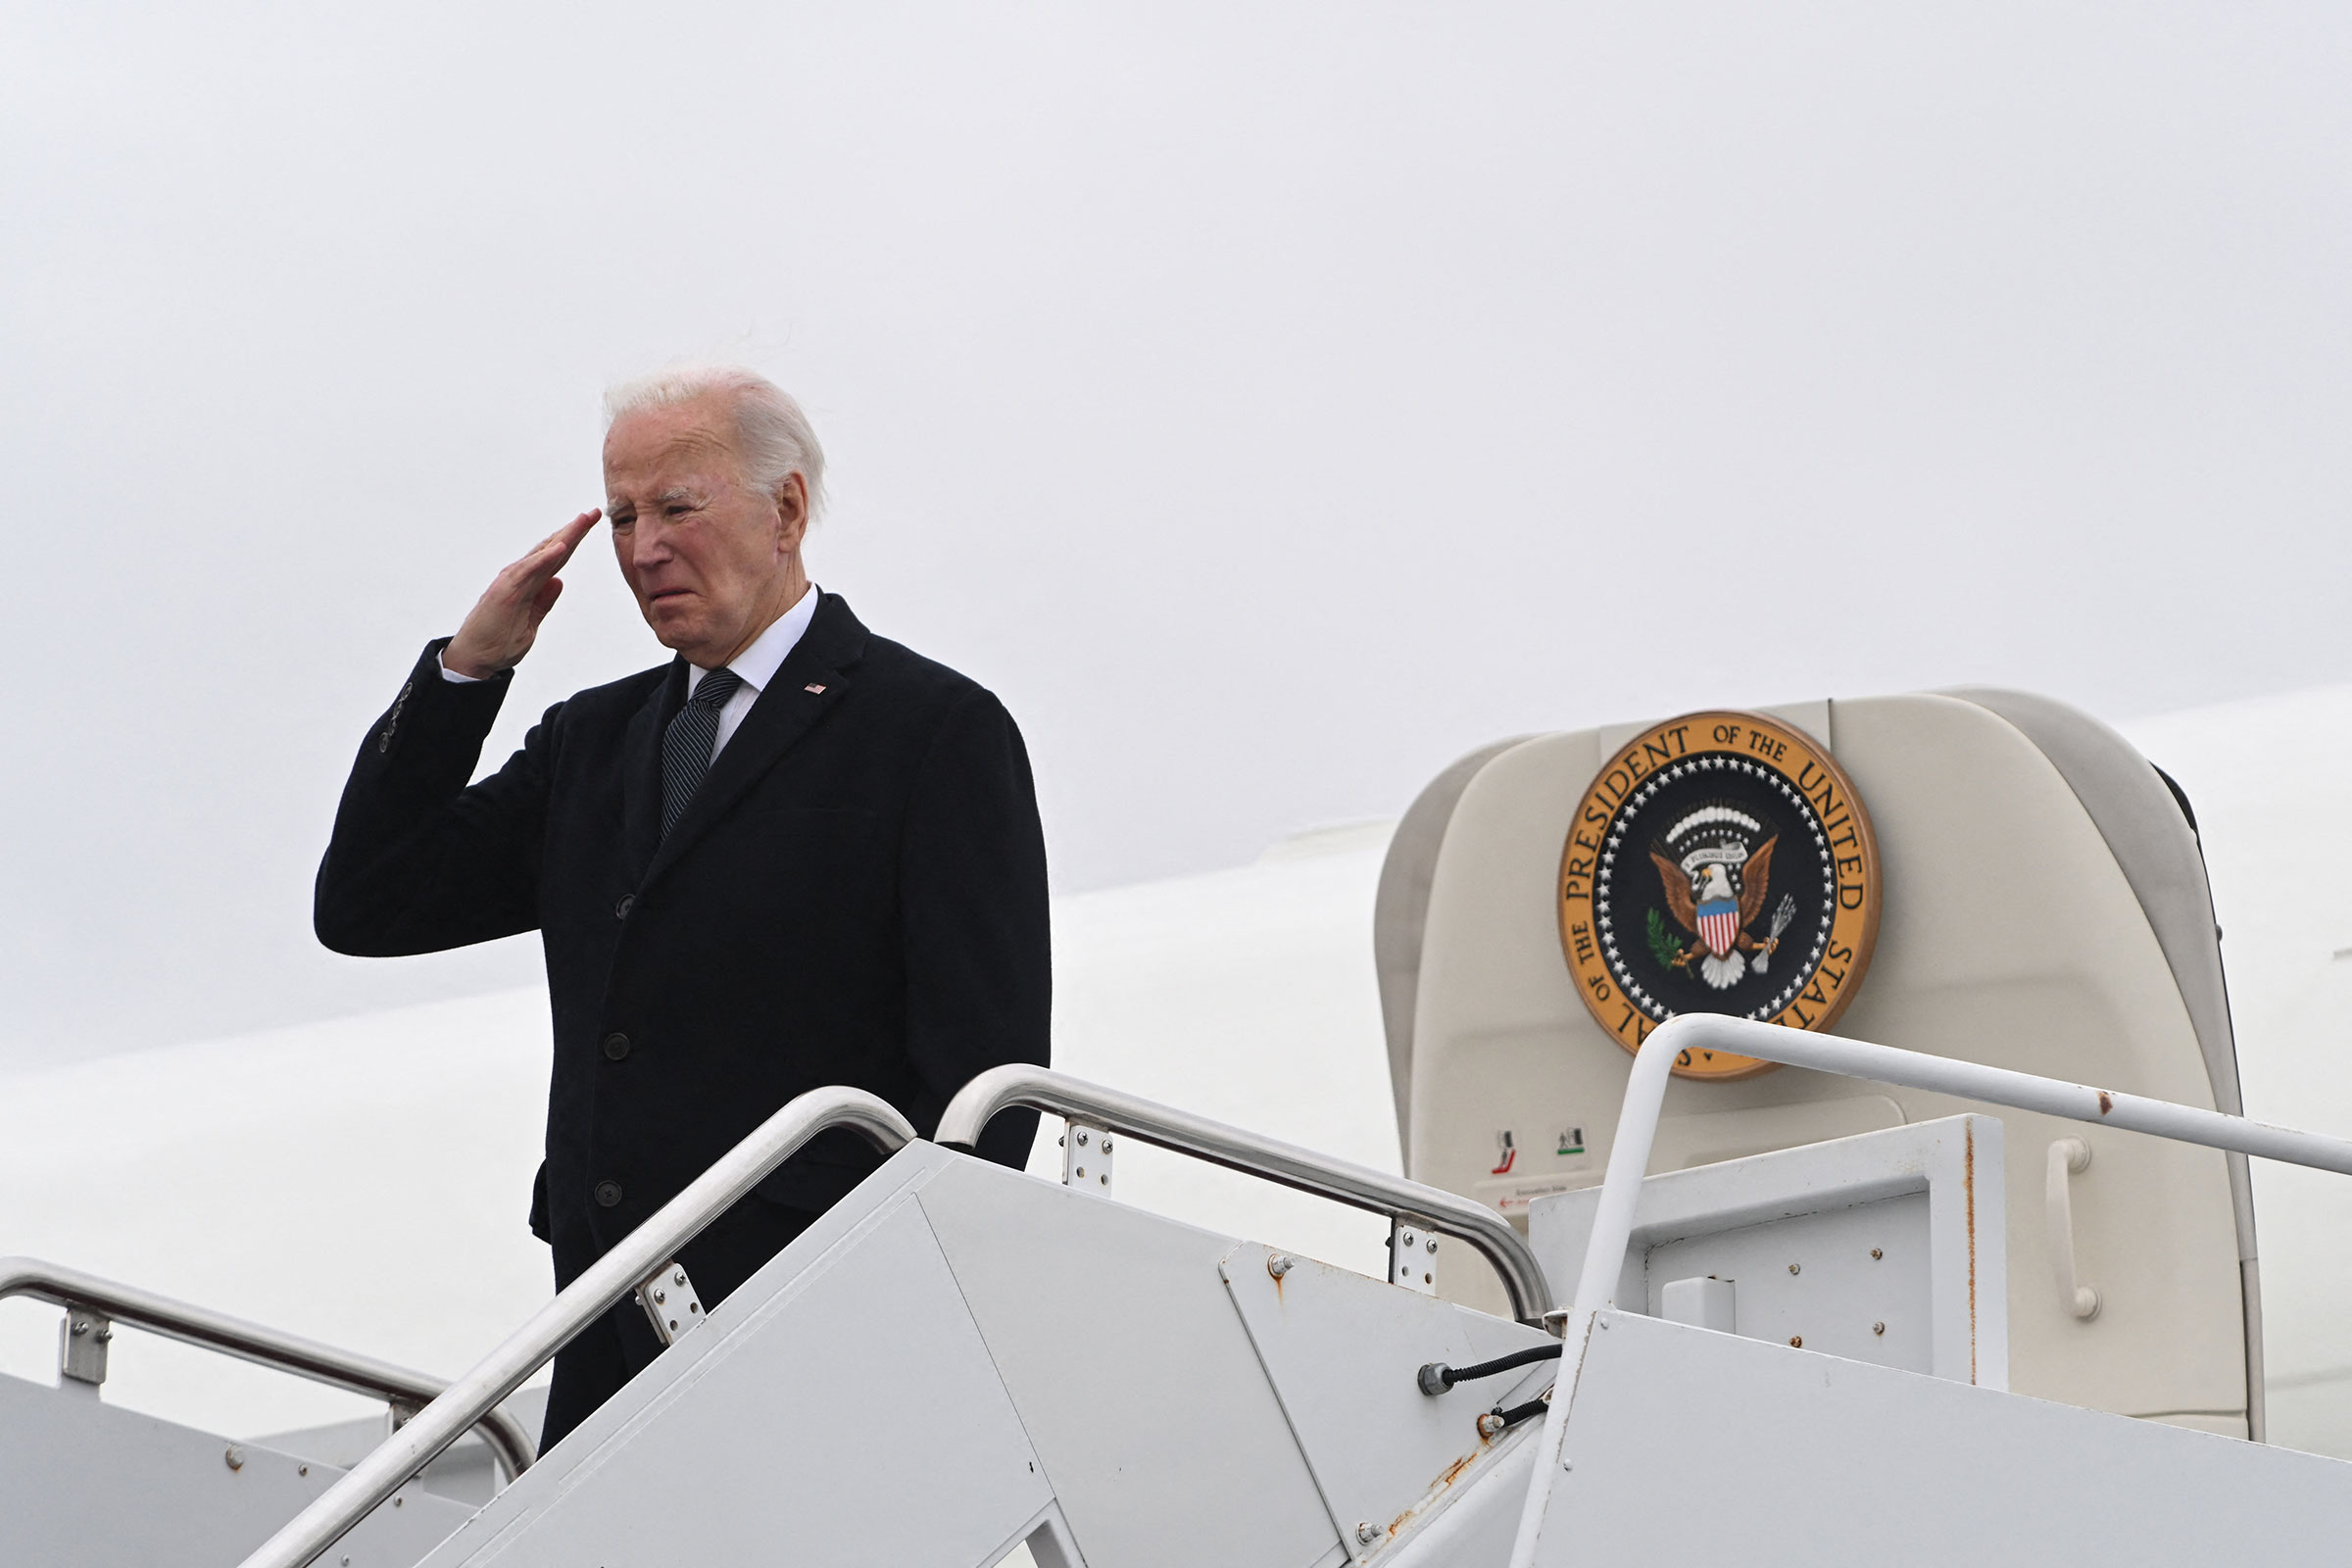 El presidente de Estados Unidos, Joe Biden, saluda mientras aborda el Air Force One después de asistir al traslado digno de los restos de tres miembros del servicio estadounidense muertos en el ataque con drones en Jordania, en la Base de la Fuerza Aérea de Dover en Dover, Delaware, el 2 de febrero. (Roberto Schmidt/AFP/Getty Images)